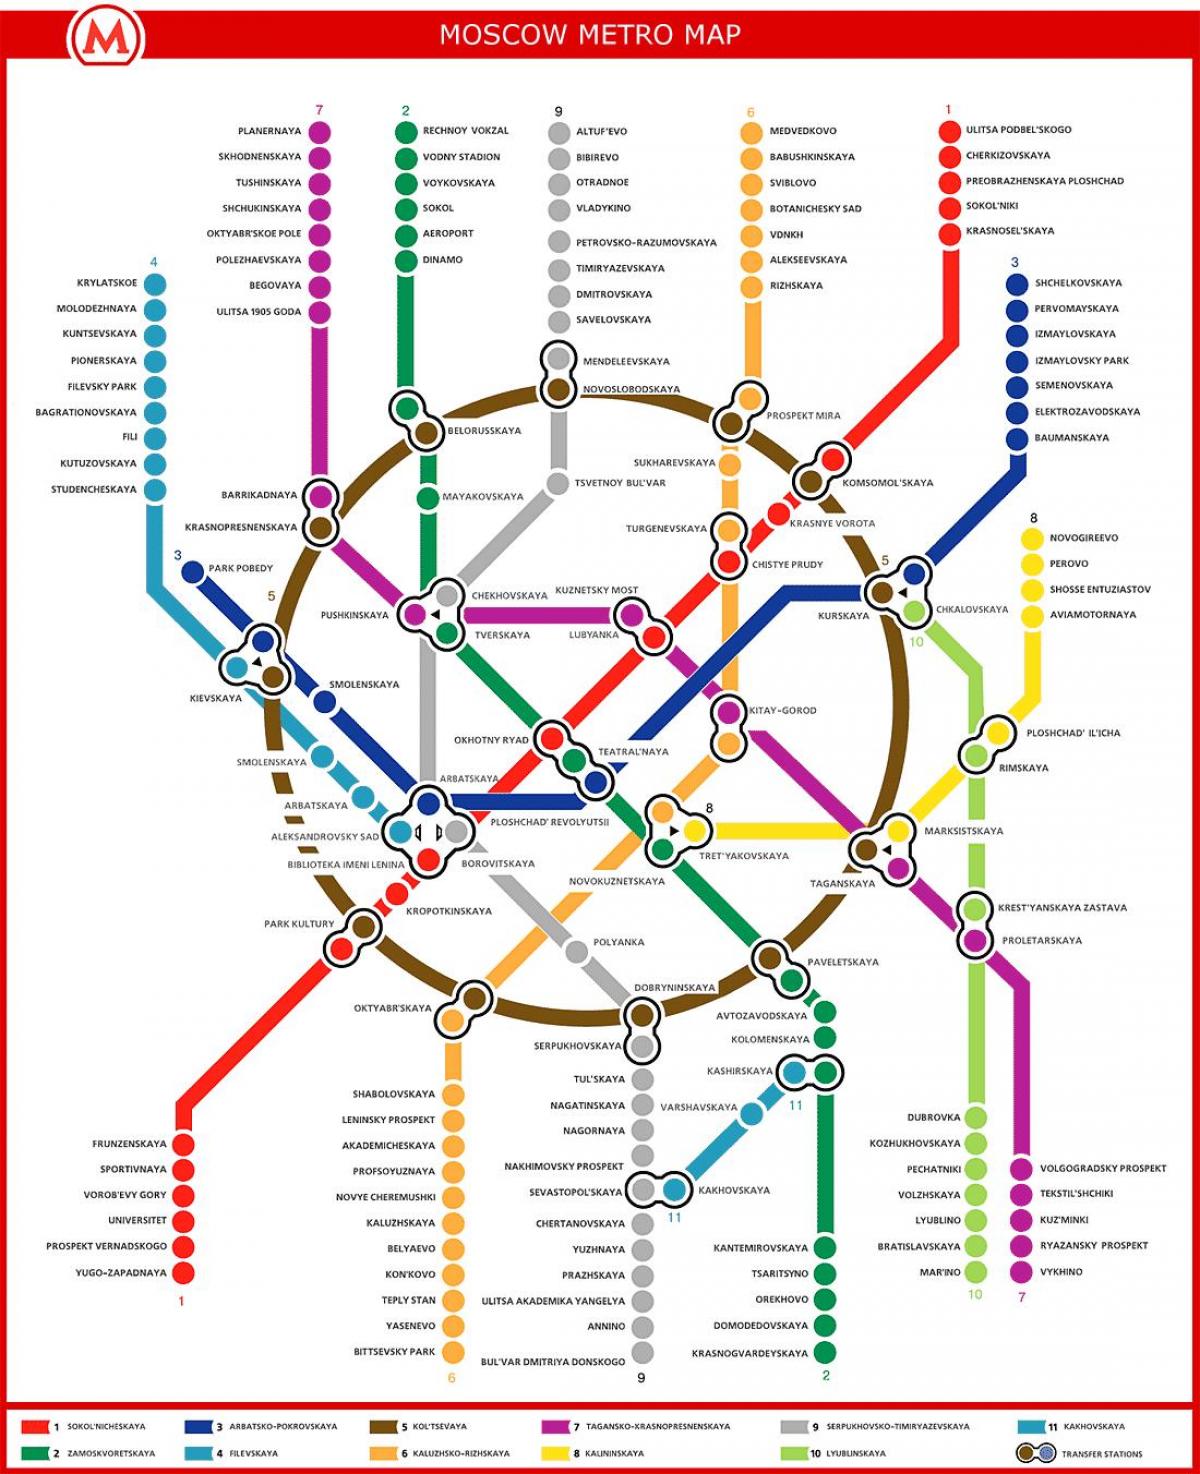 Tìm hiểu bản đồ metro Nga và hệ thống giao thông Nga